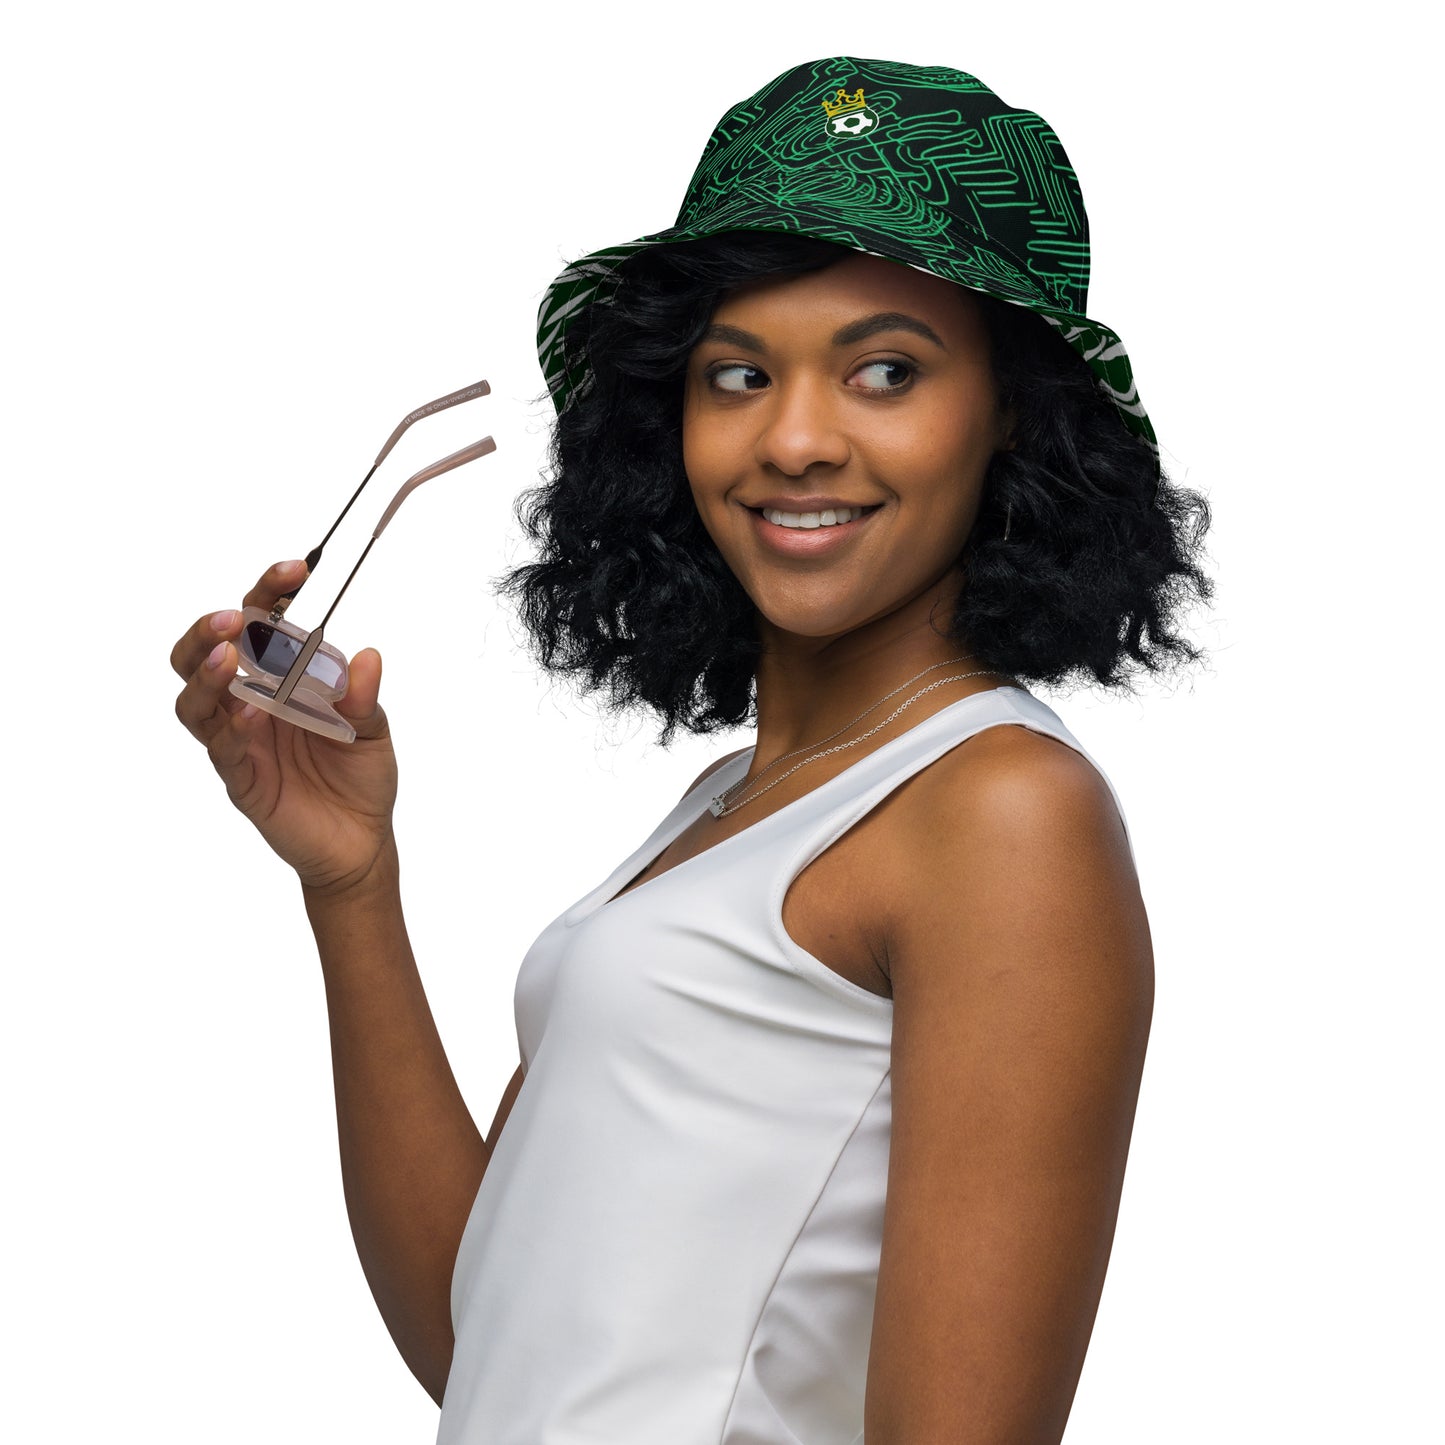 Nigeria Reversible bucket hat